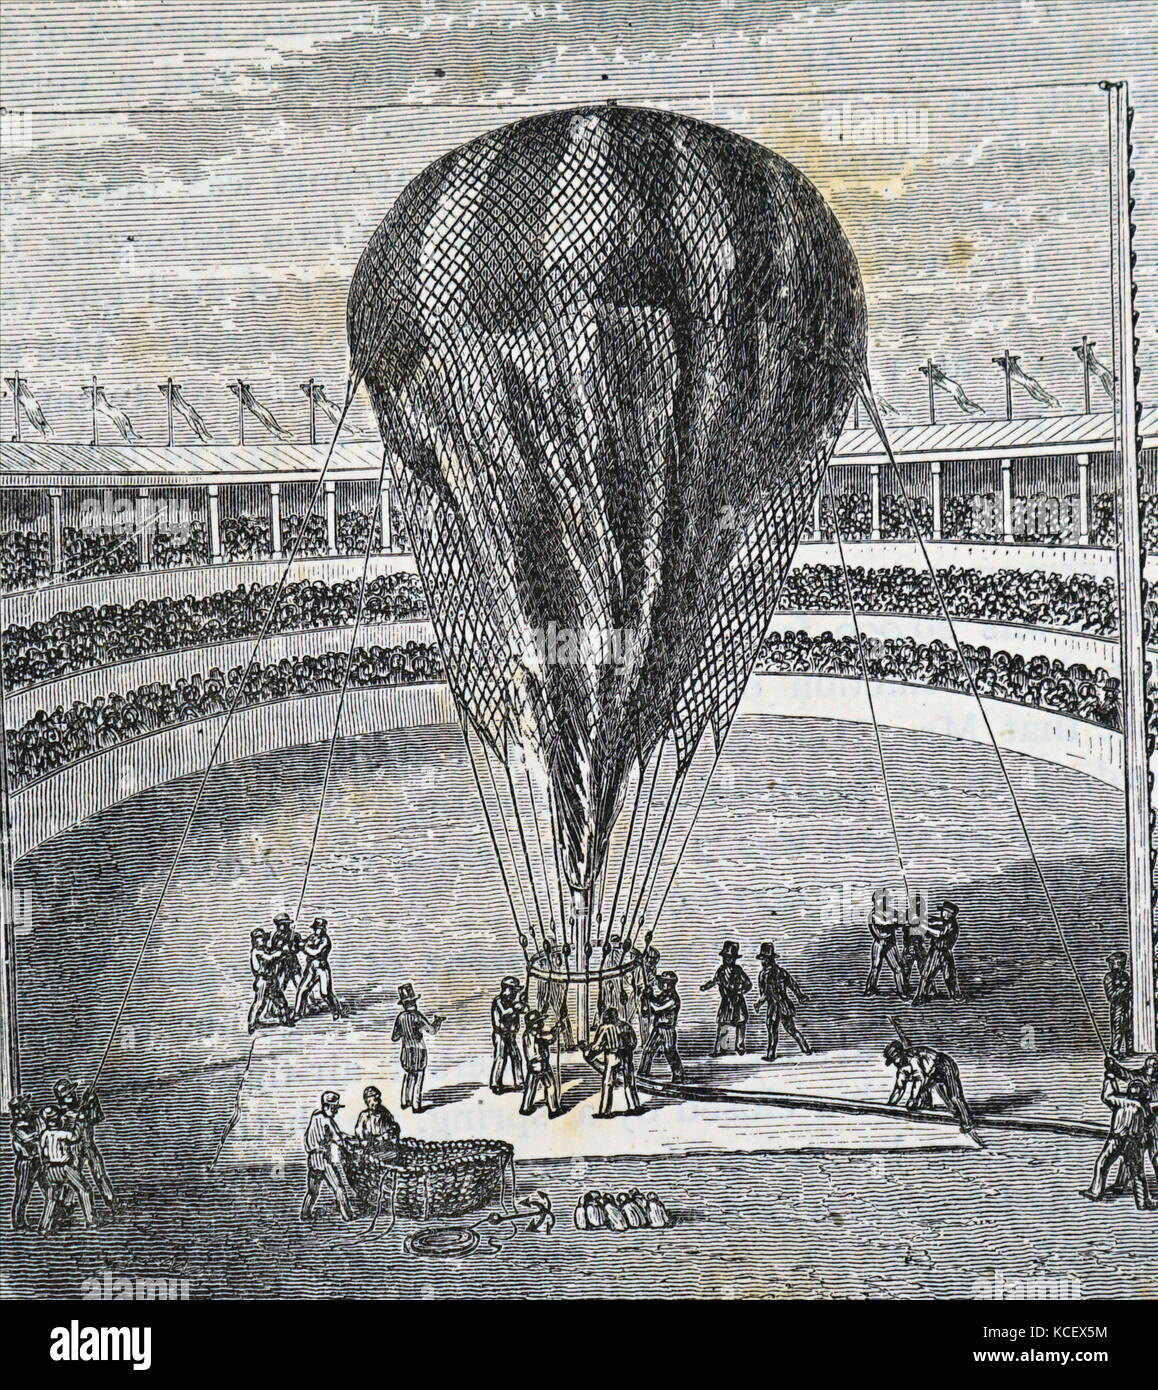 Kupferstich mit der Darstellung der Befüllung von einem Ballon in England. Vom 19. Jahrhundert Stockfoto